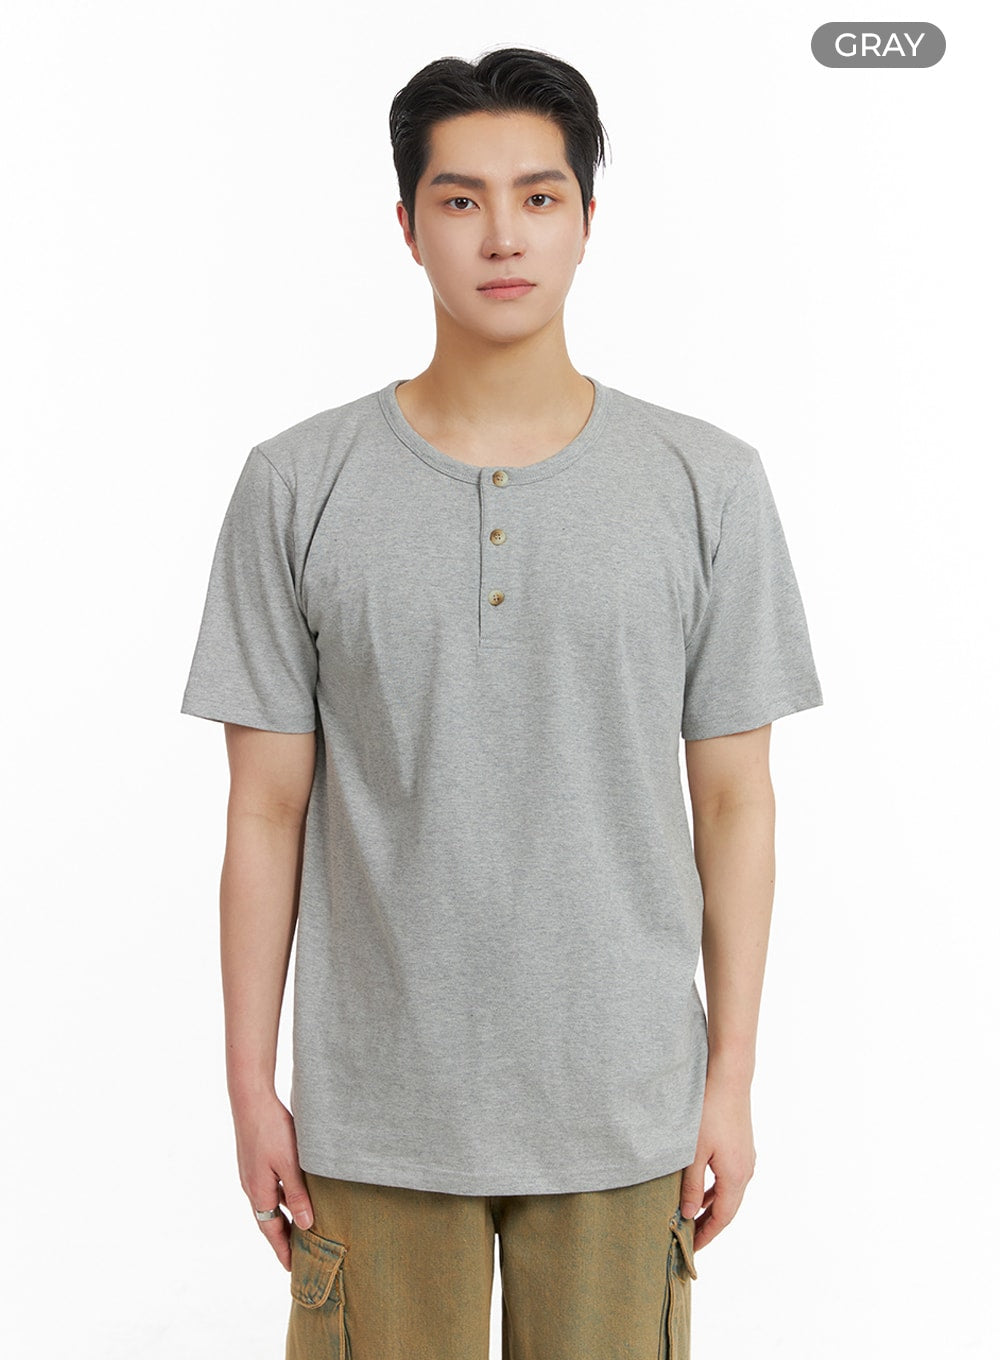 mens-quarter-button-up-cotton-t-shirt-ia401 / Gray